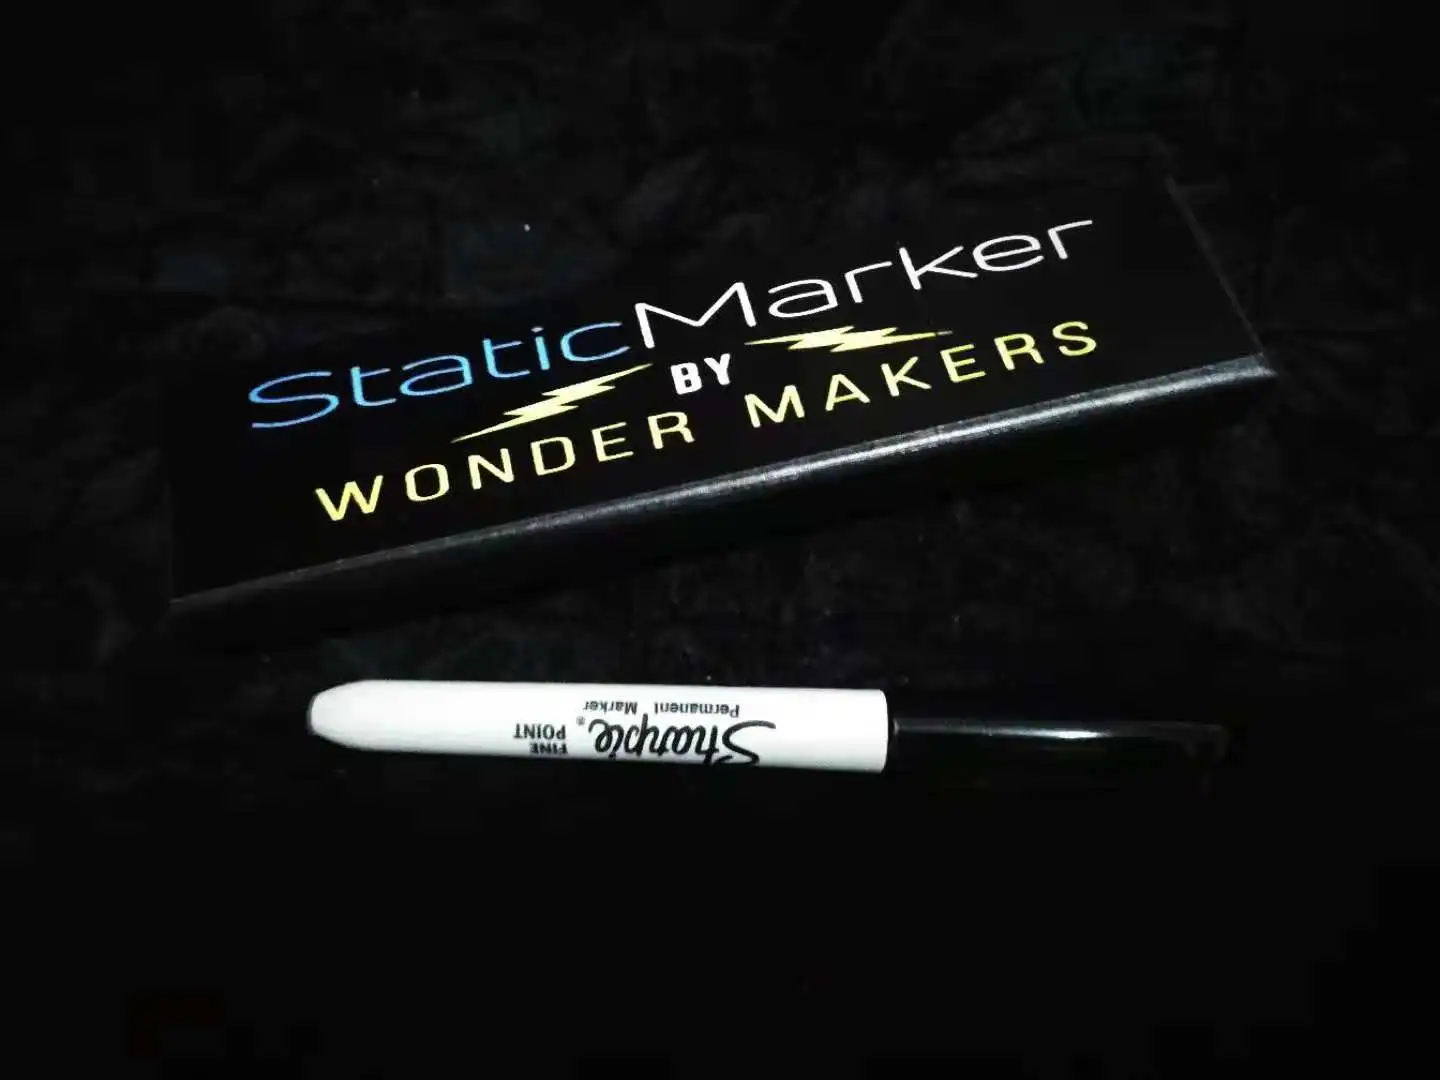 Статический маркер от Wonder Makers(Gimmicks и онлайн-инструкции) магические аксессуары для магов, сценические магические иллюзии